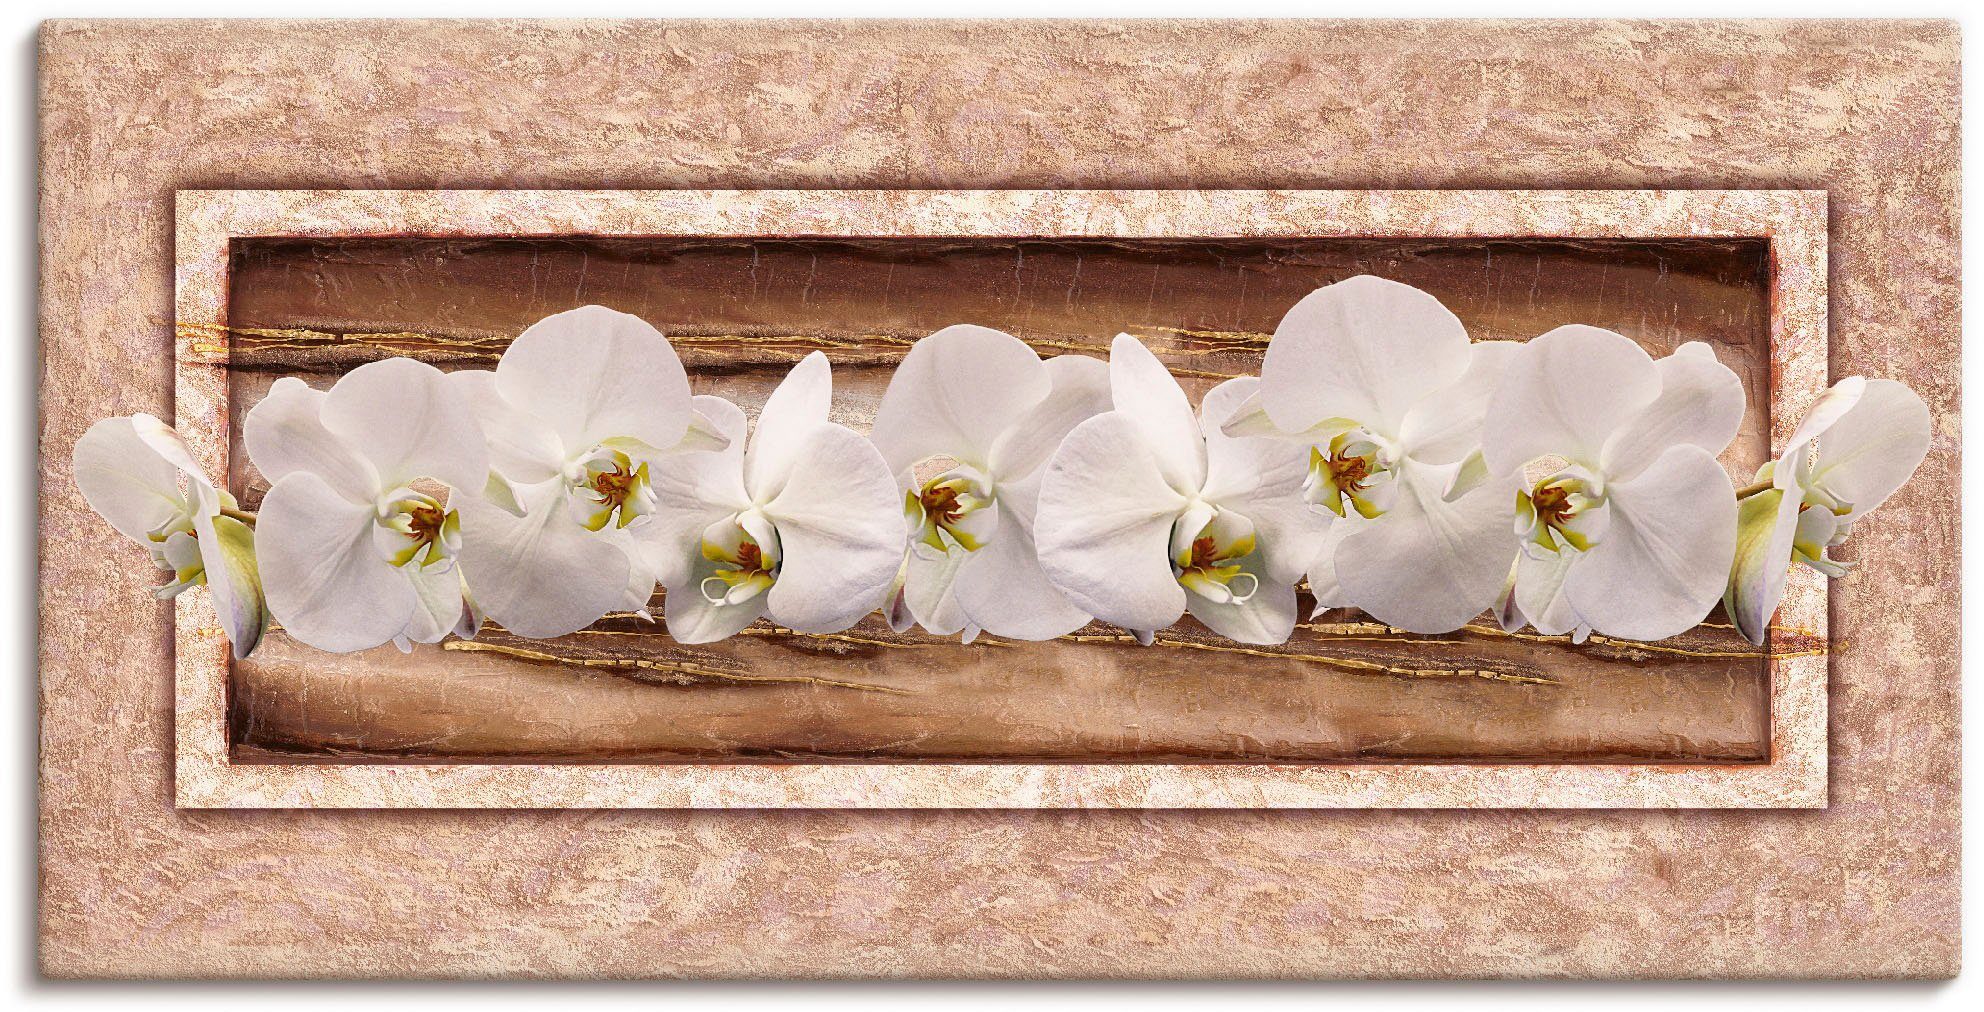 Artland Artprint Witte orchideeën bruin goud in vele afmetingen & productsoorten -artprint op linnen, poster, muursticker / wandfolie ook geschikt voor de badkamer (1 stuk)